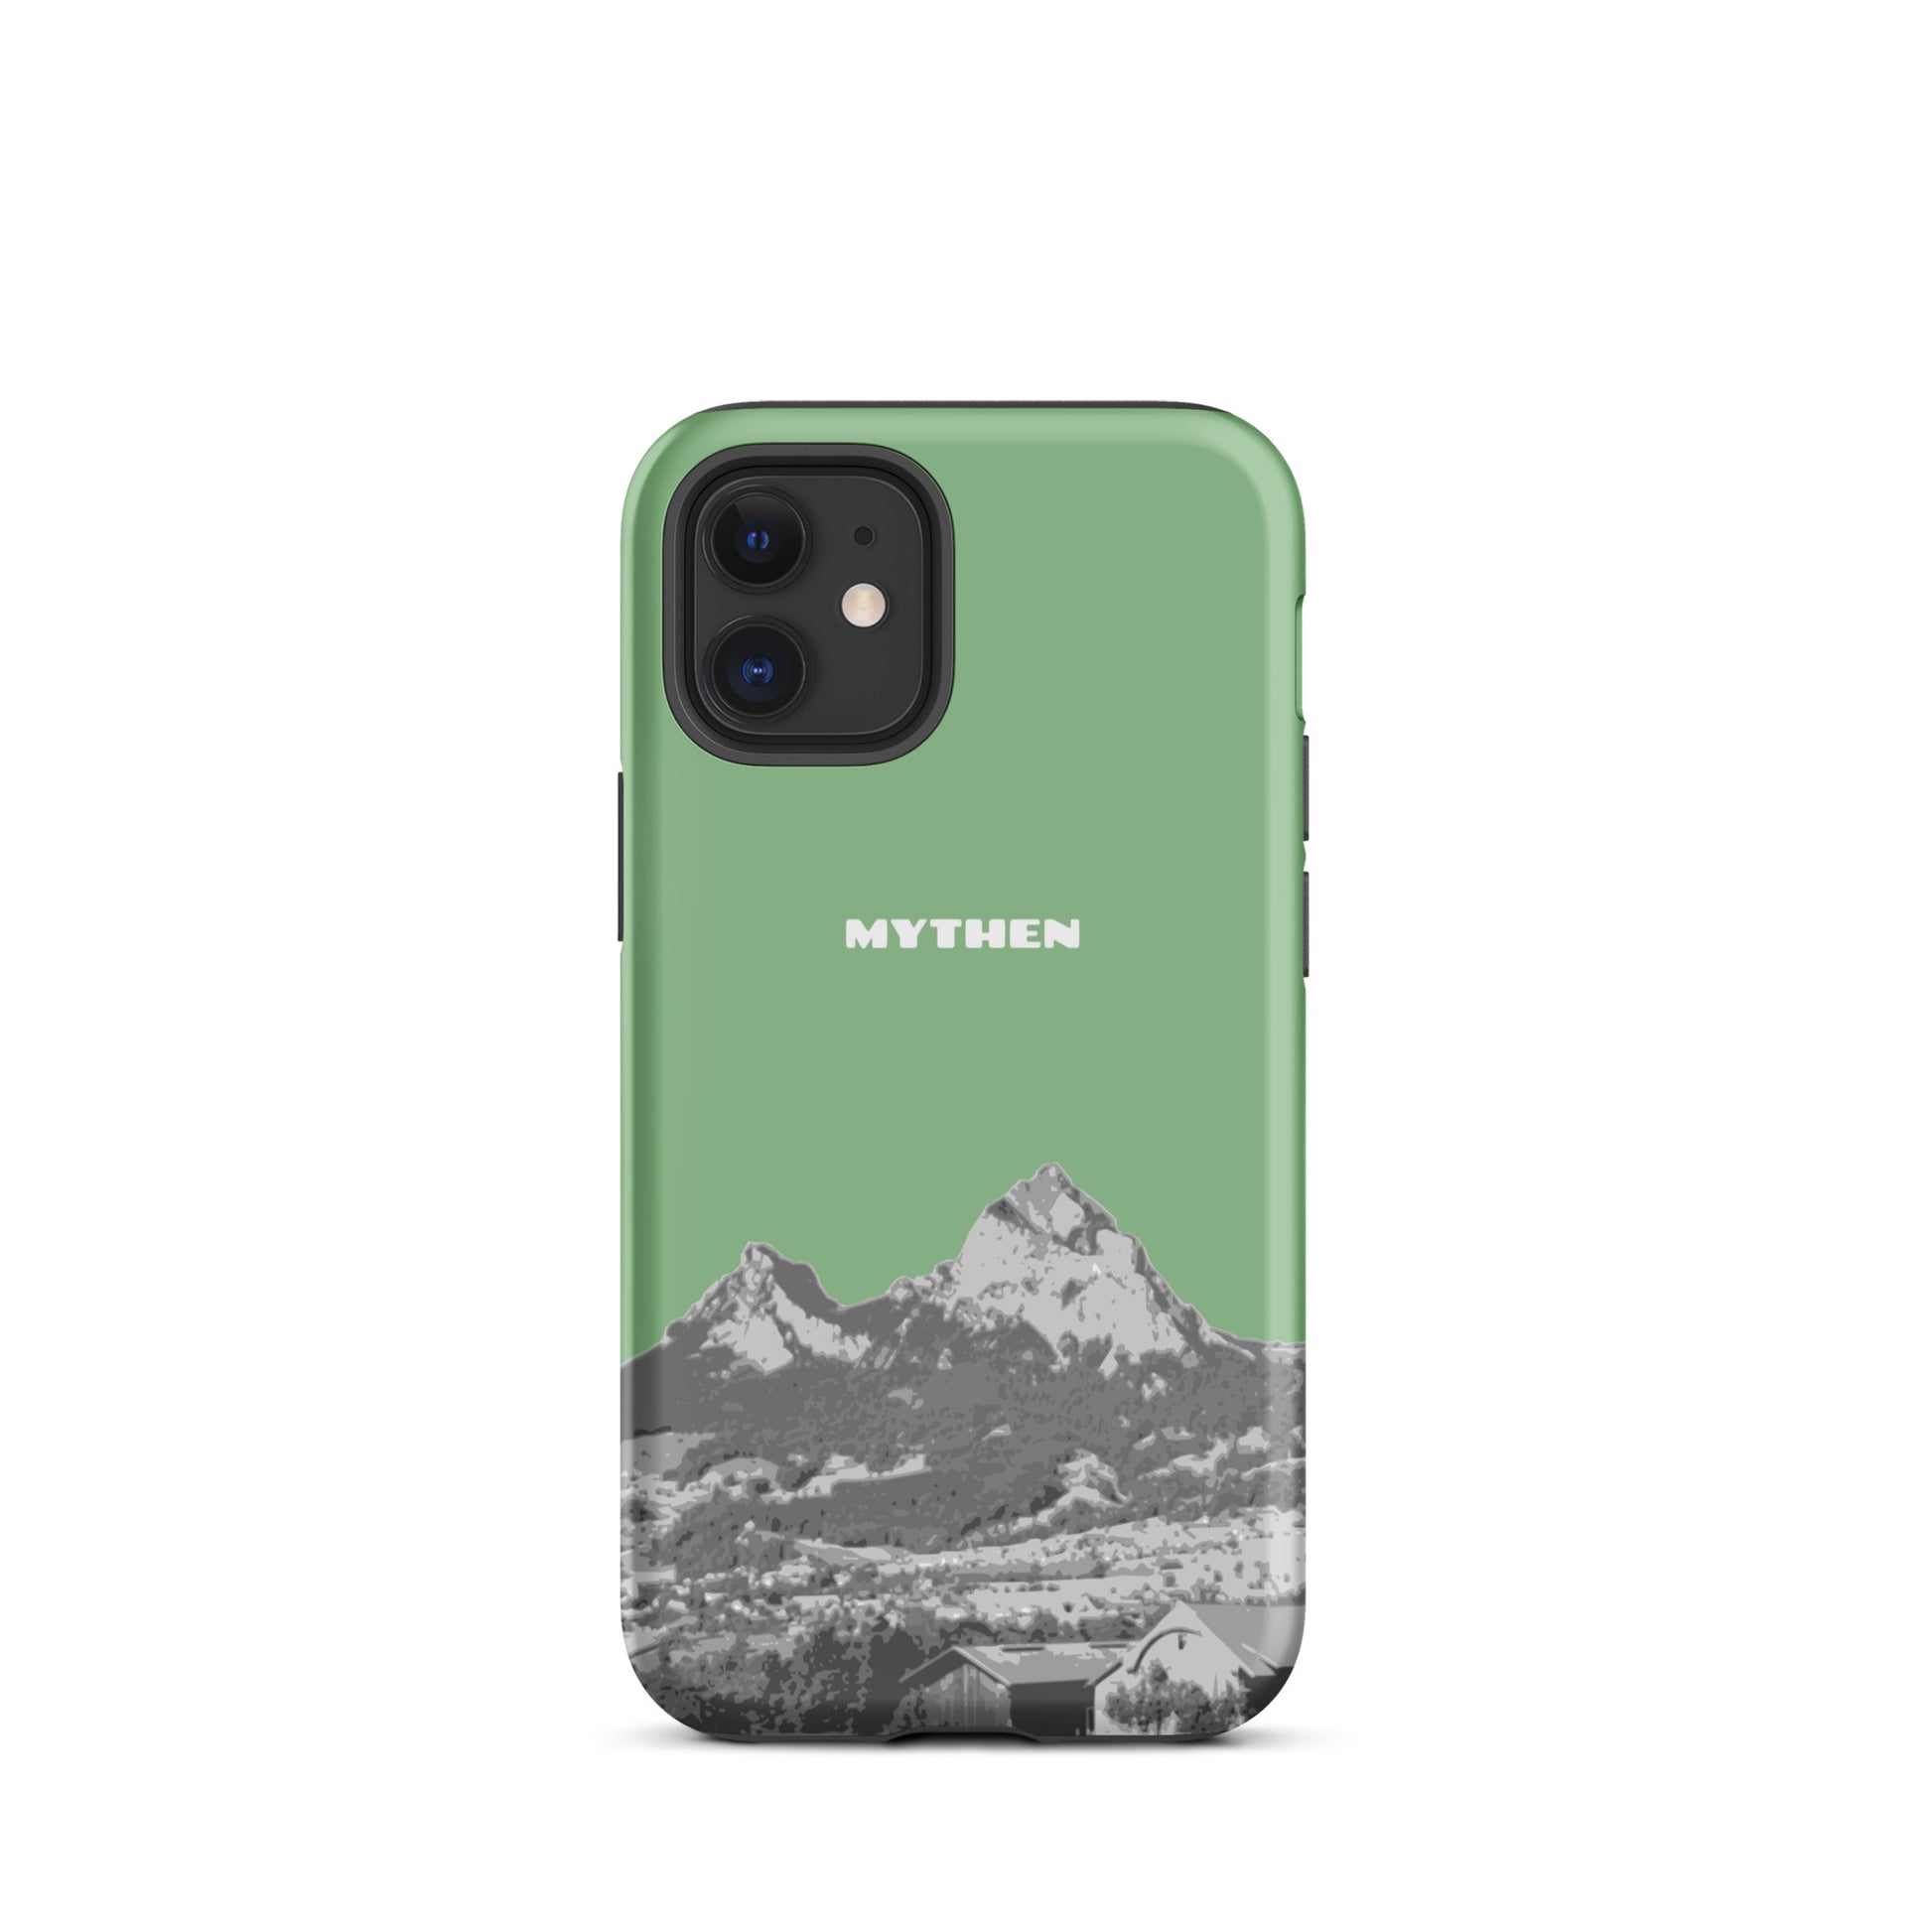 Hülle für das iPhone 12 mini von Apple in der Farbe Hellgrün, dass den Grossen Mythen und den Kleinen Mythen bei Schwyz zeigt. 